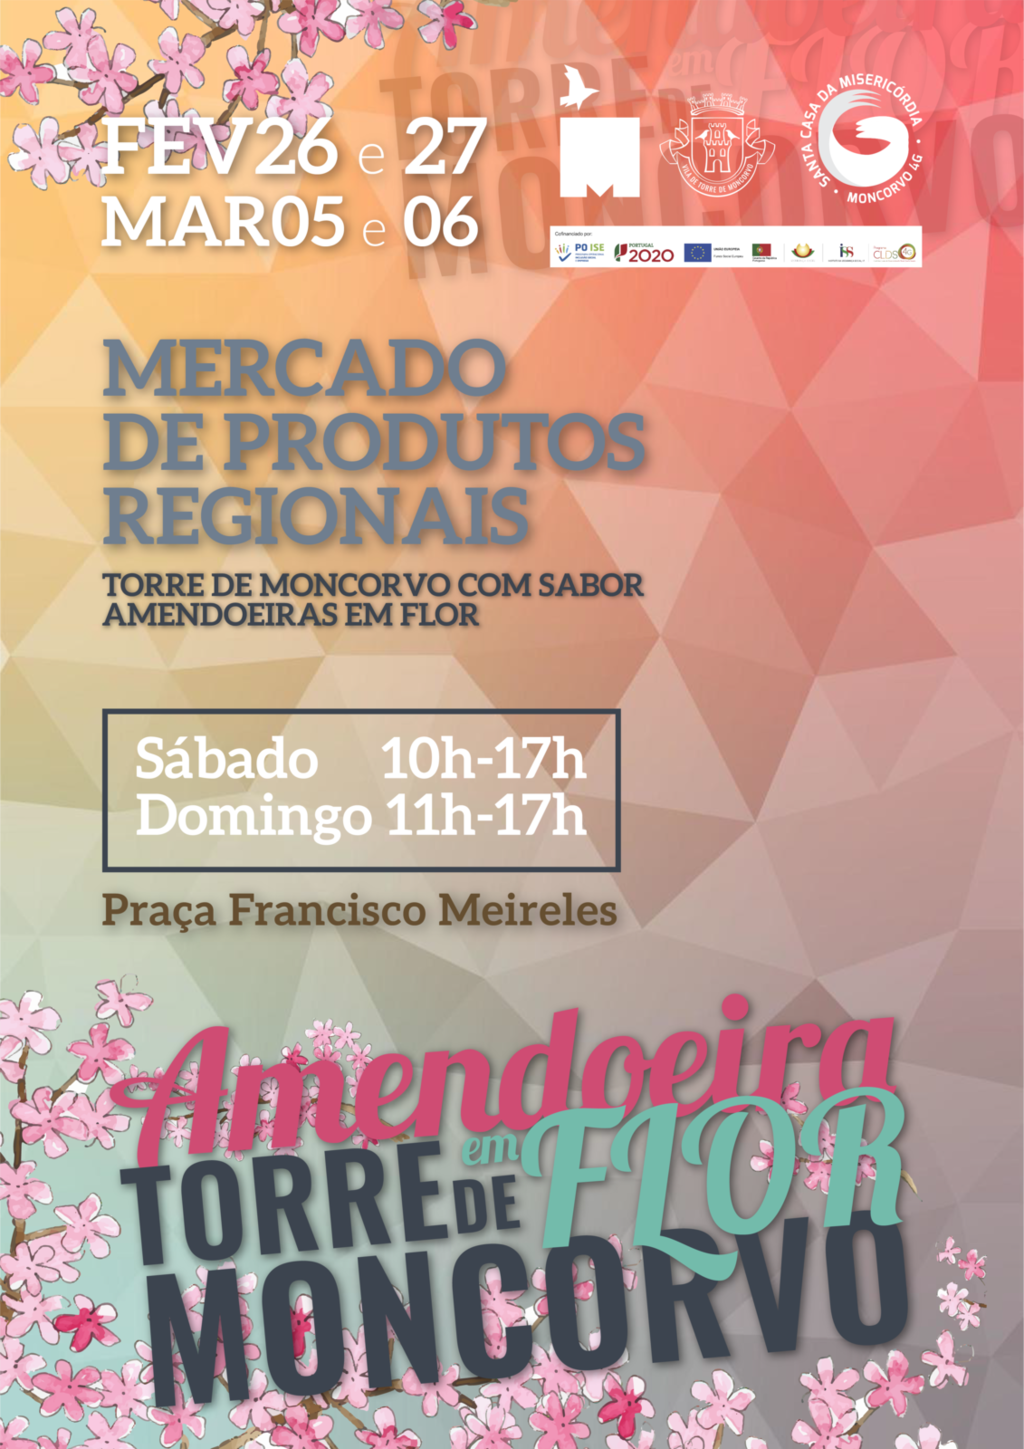 Mercado de Produtos Regionais "Torre de Moncorvo com Sabor - Amendoeiras em Flor"